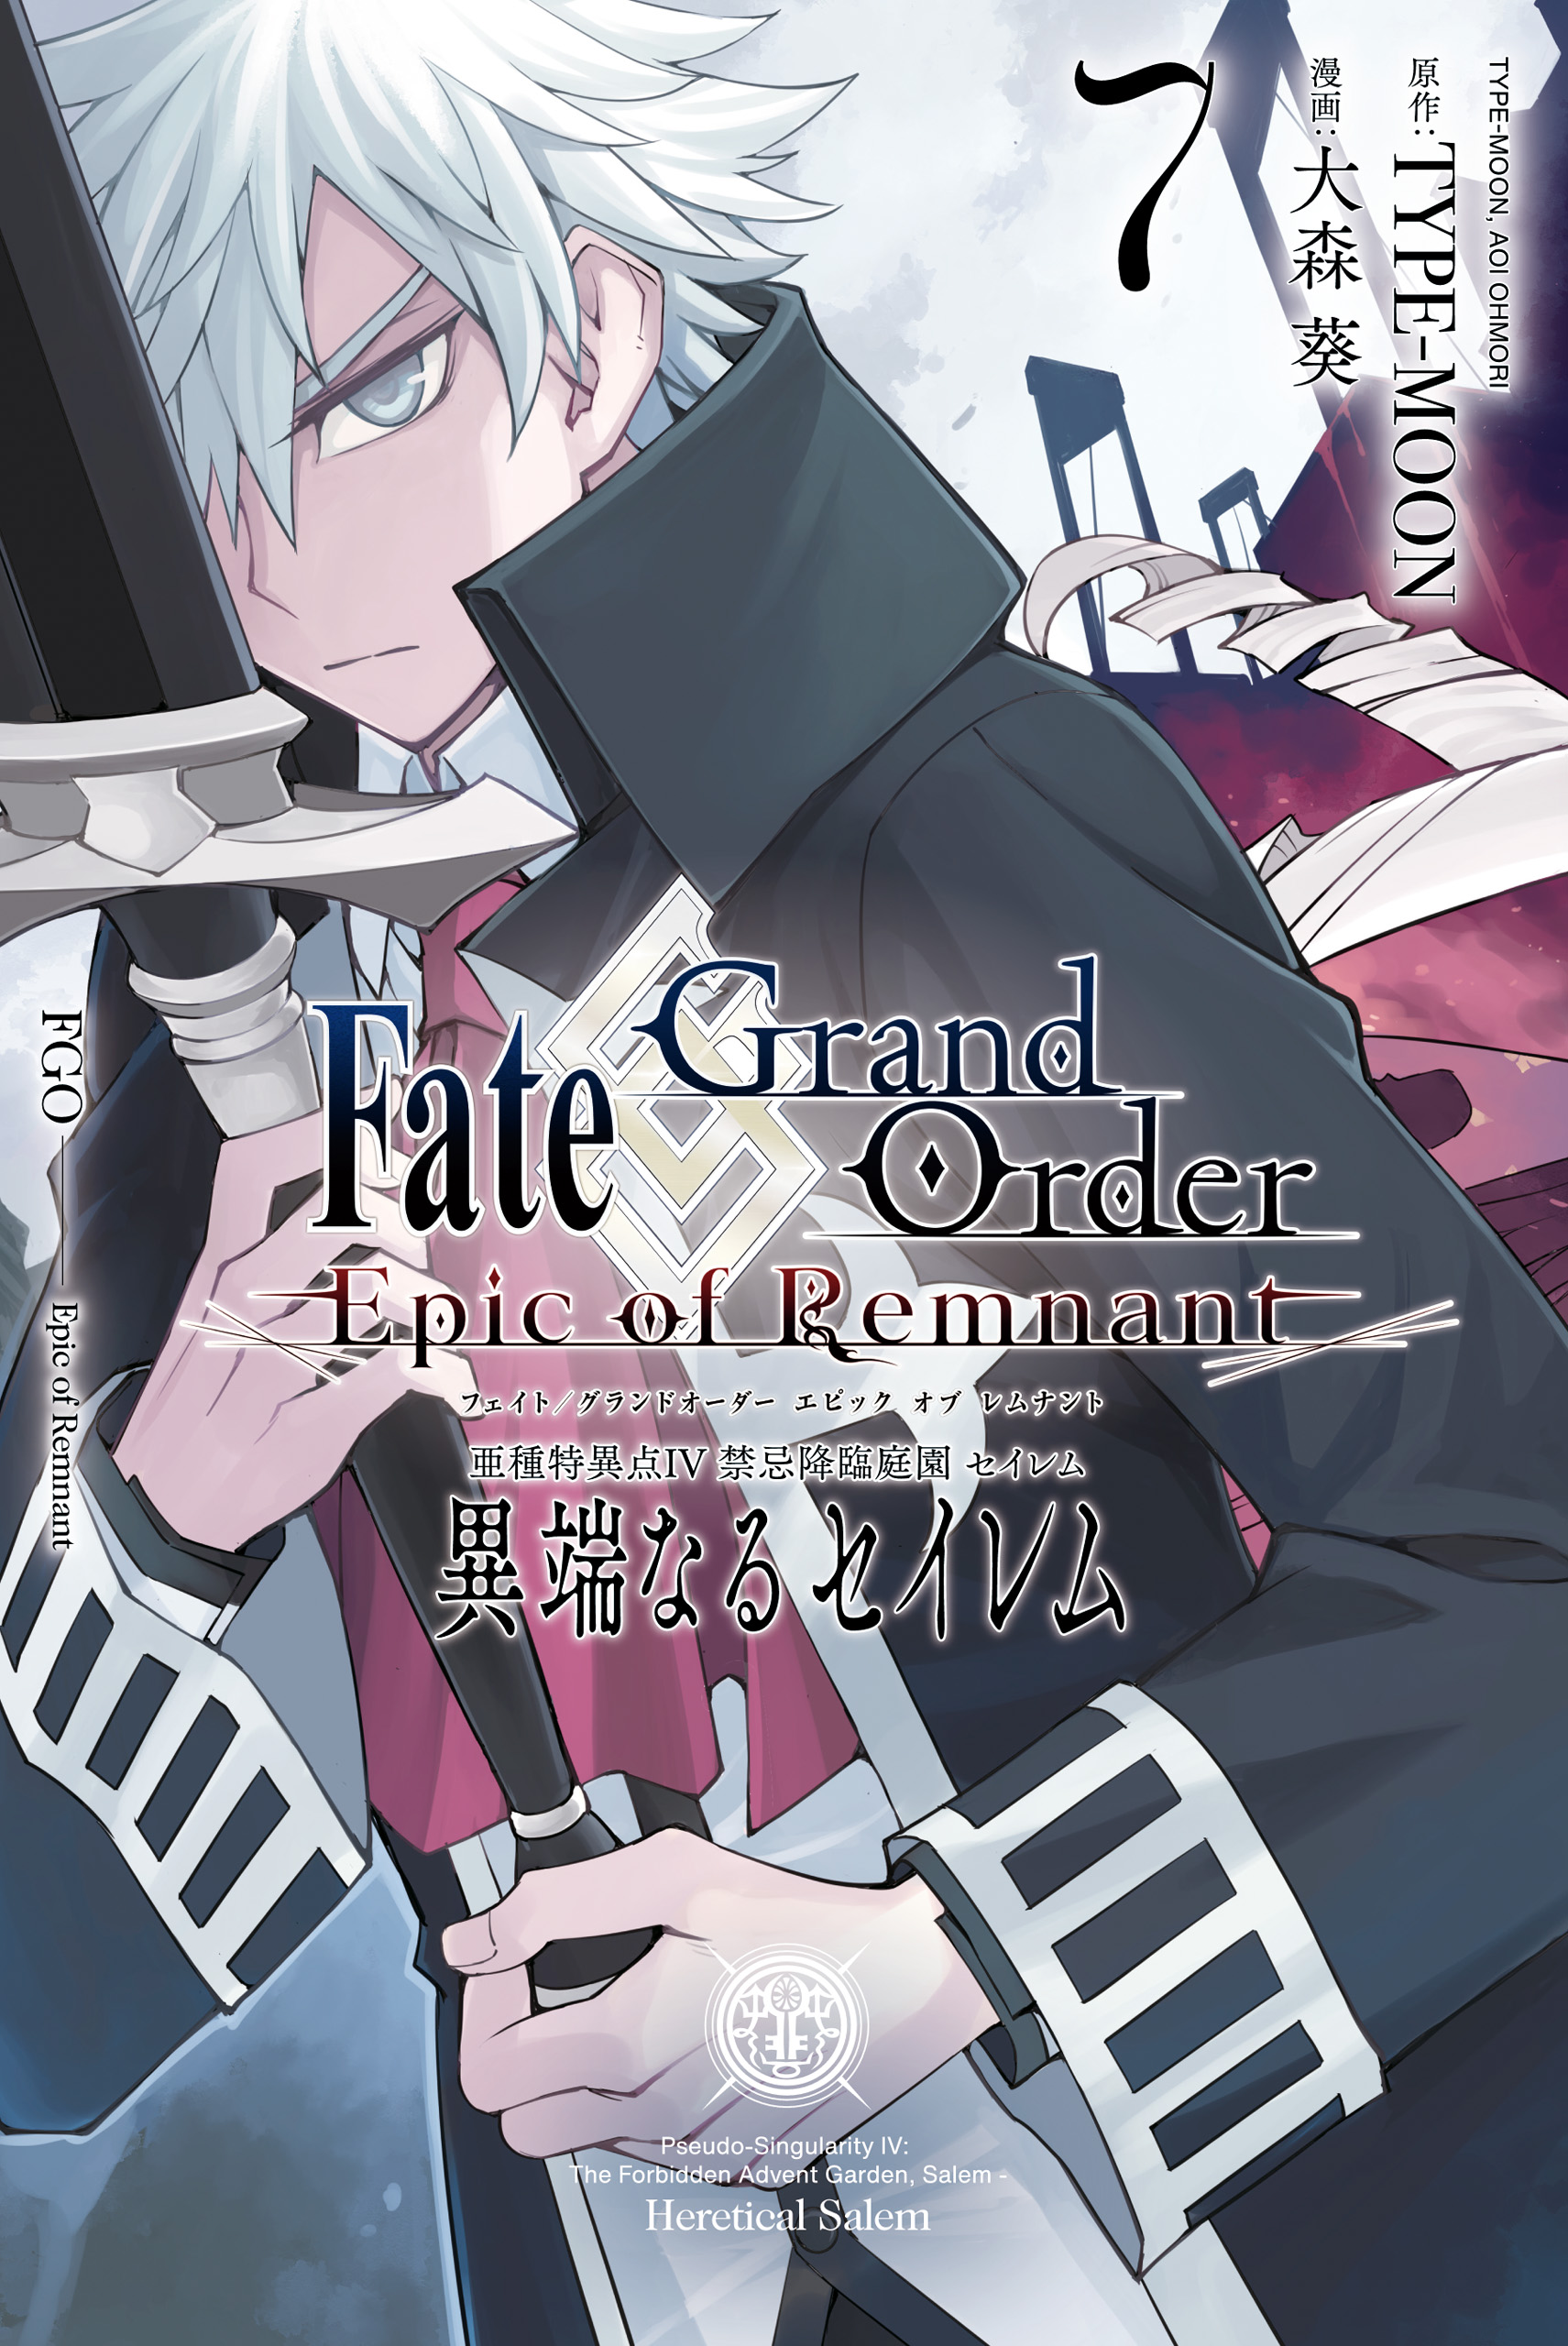 Fate/Grand Order -Epic of Remnant- Pseudo-Singularity IV: The Forbidden Advent Garden, Salem - Heretical Salem